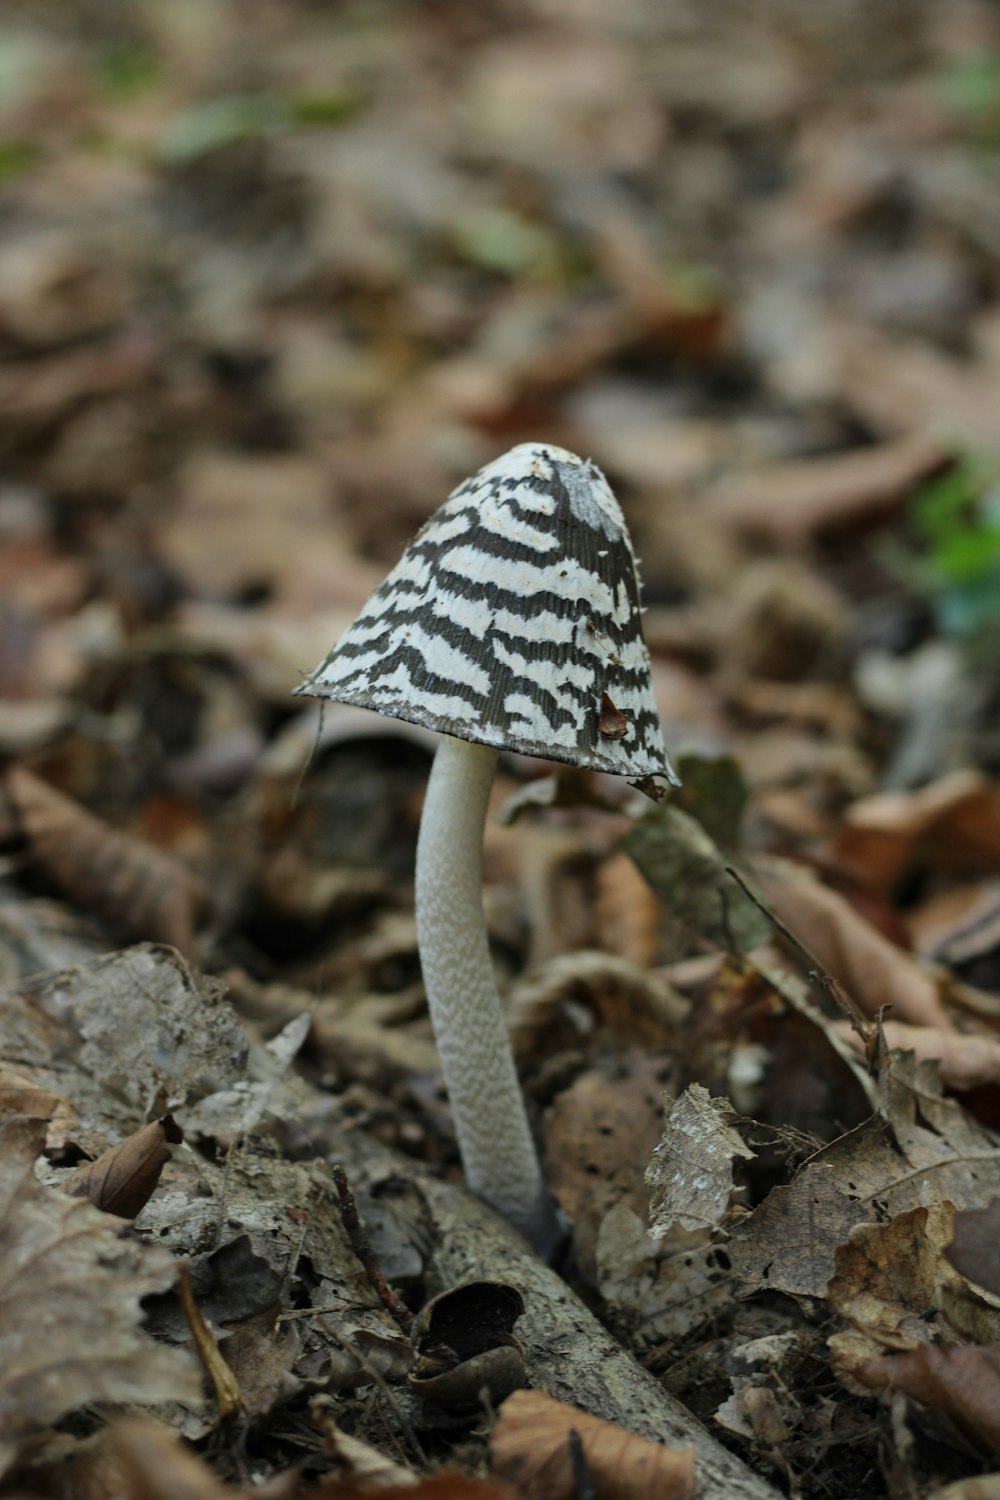 un petit champignon blanc posé sur le sol